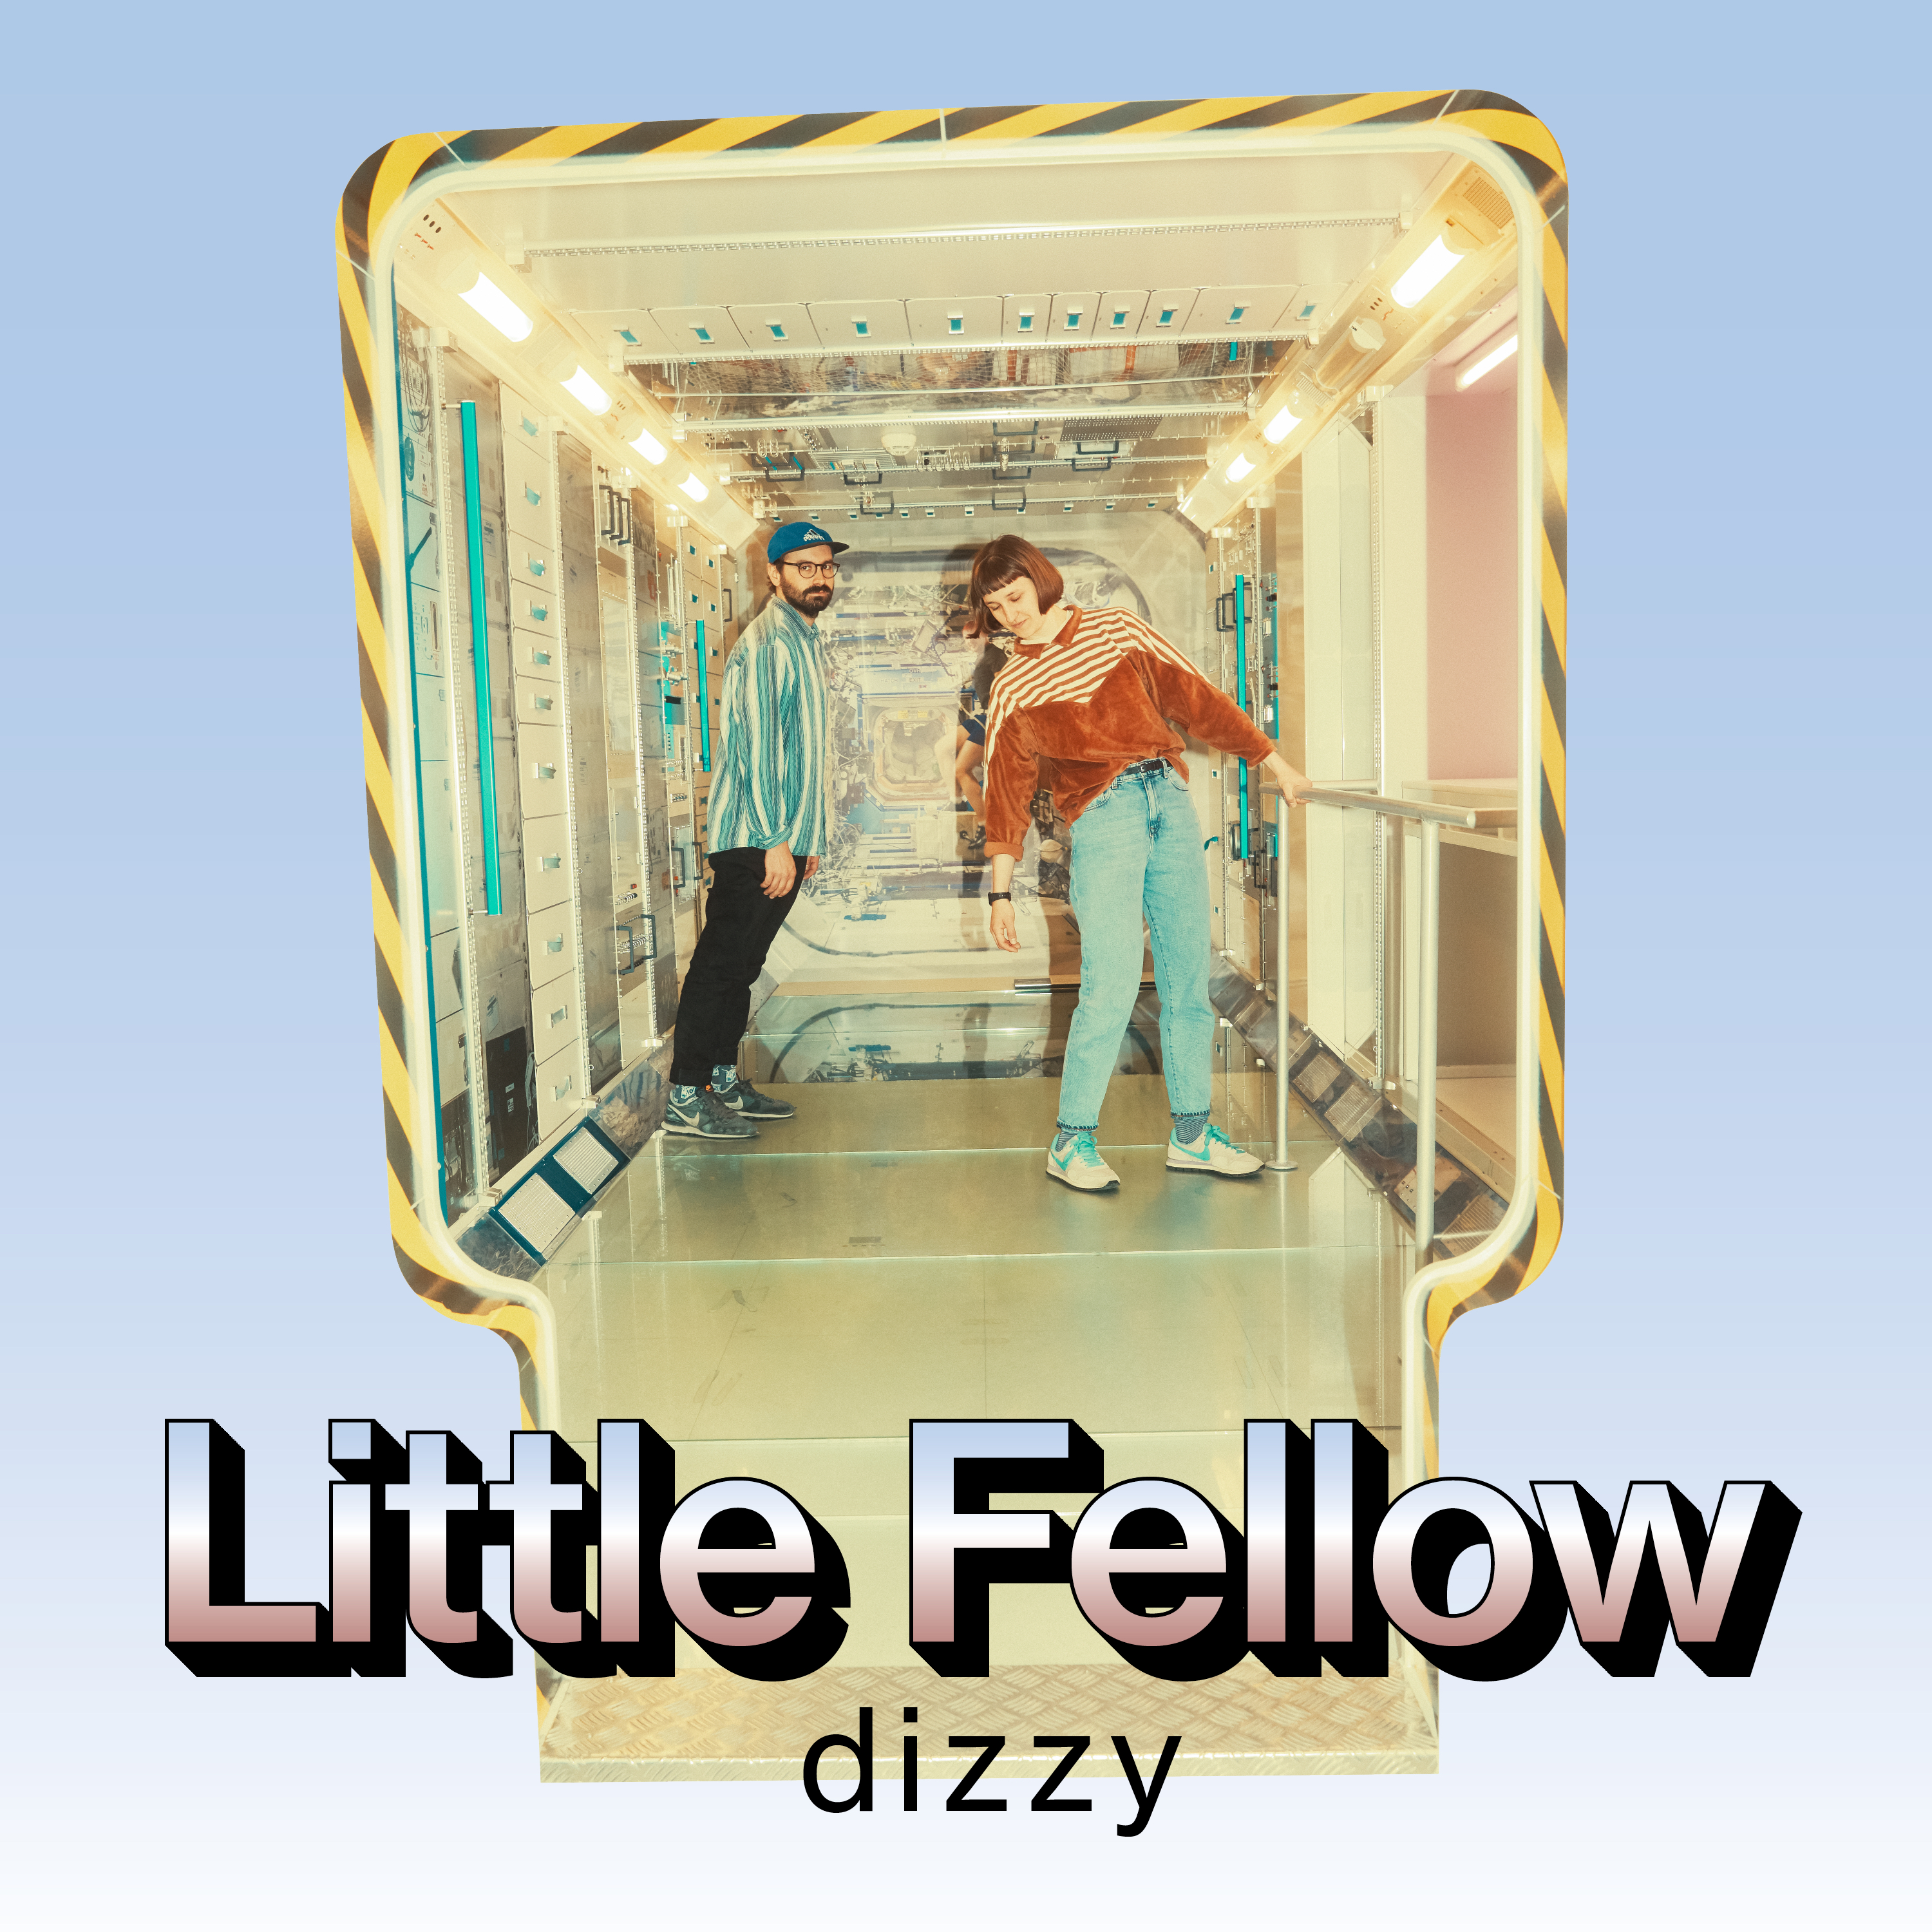 Little Fellow – dizzy